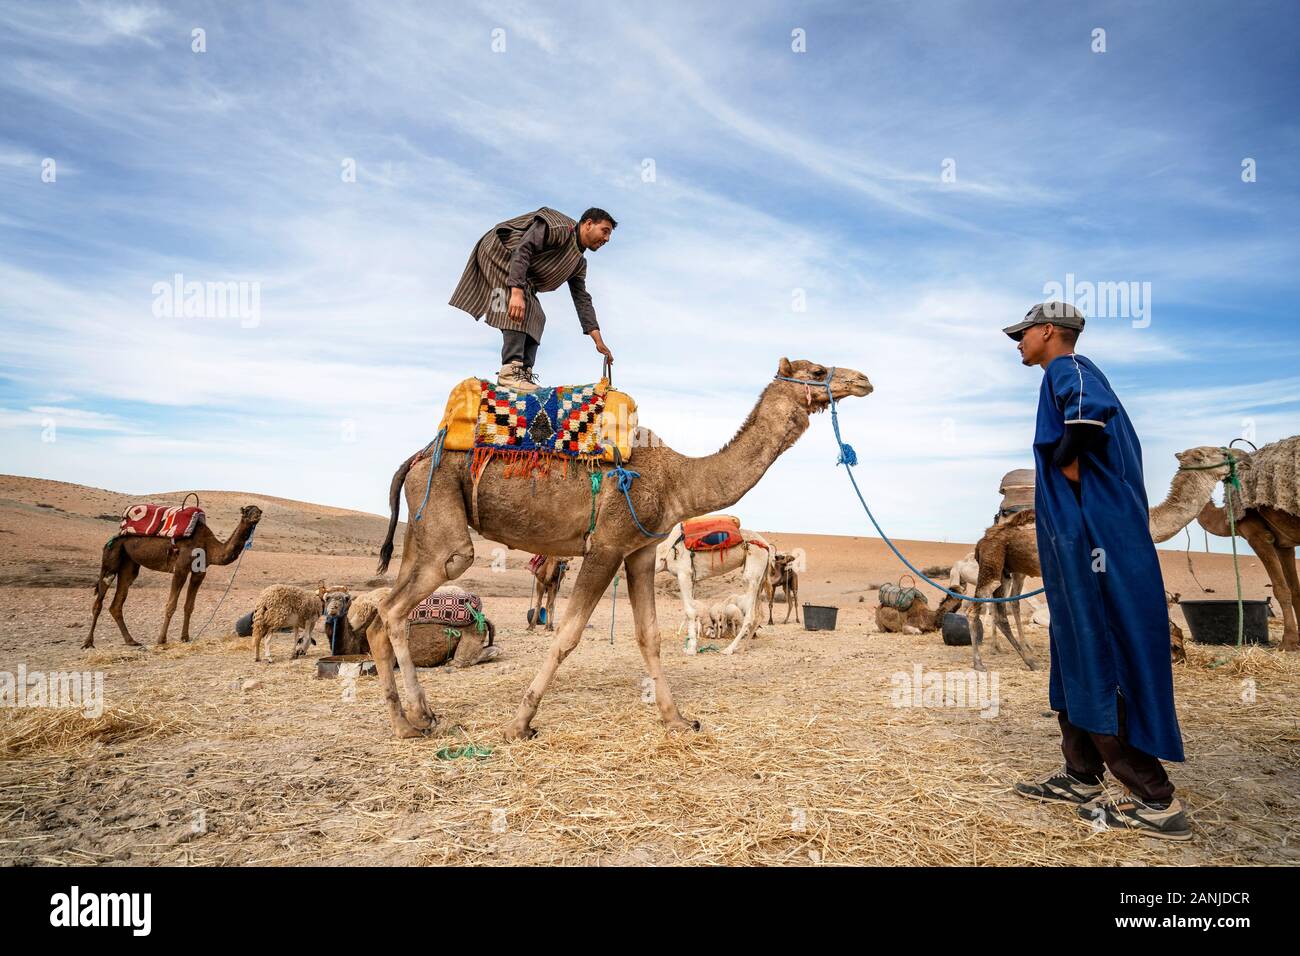 Marrakesch, Marokko - Januar 14, 2010: Ein Mann stand auf seinem Dromedar Kamel auf Agafay Wüste, Marrakesch, Marokko Stockfoto